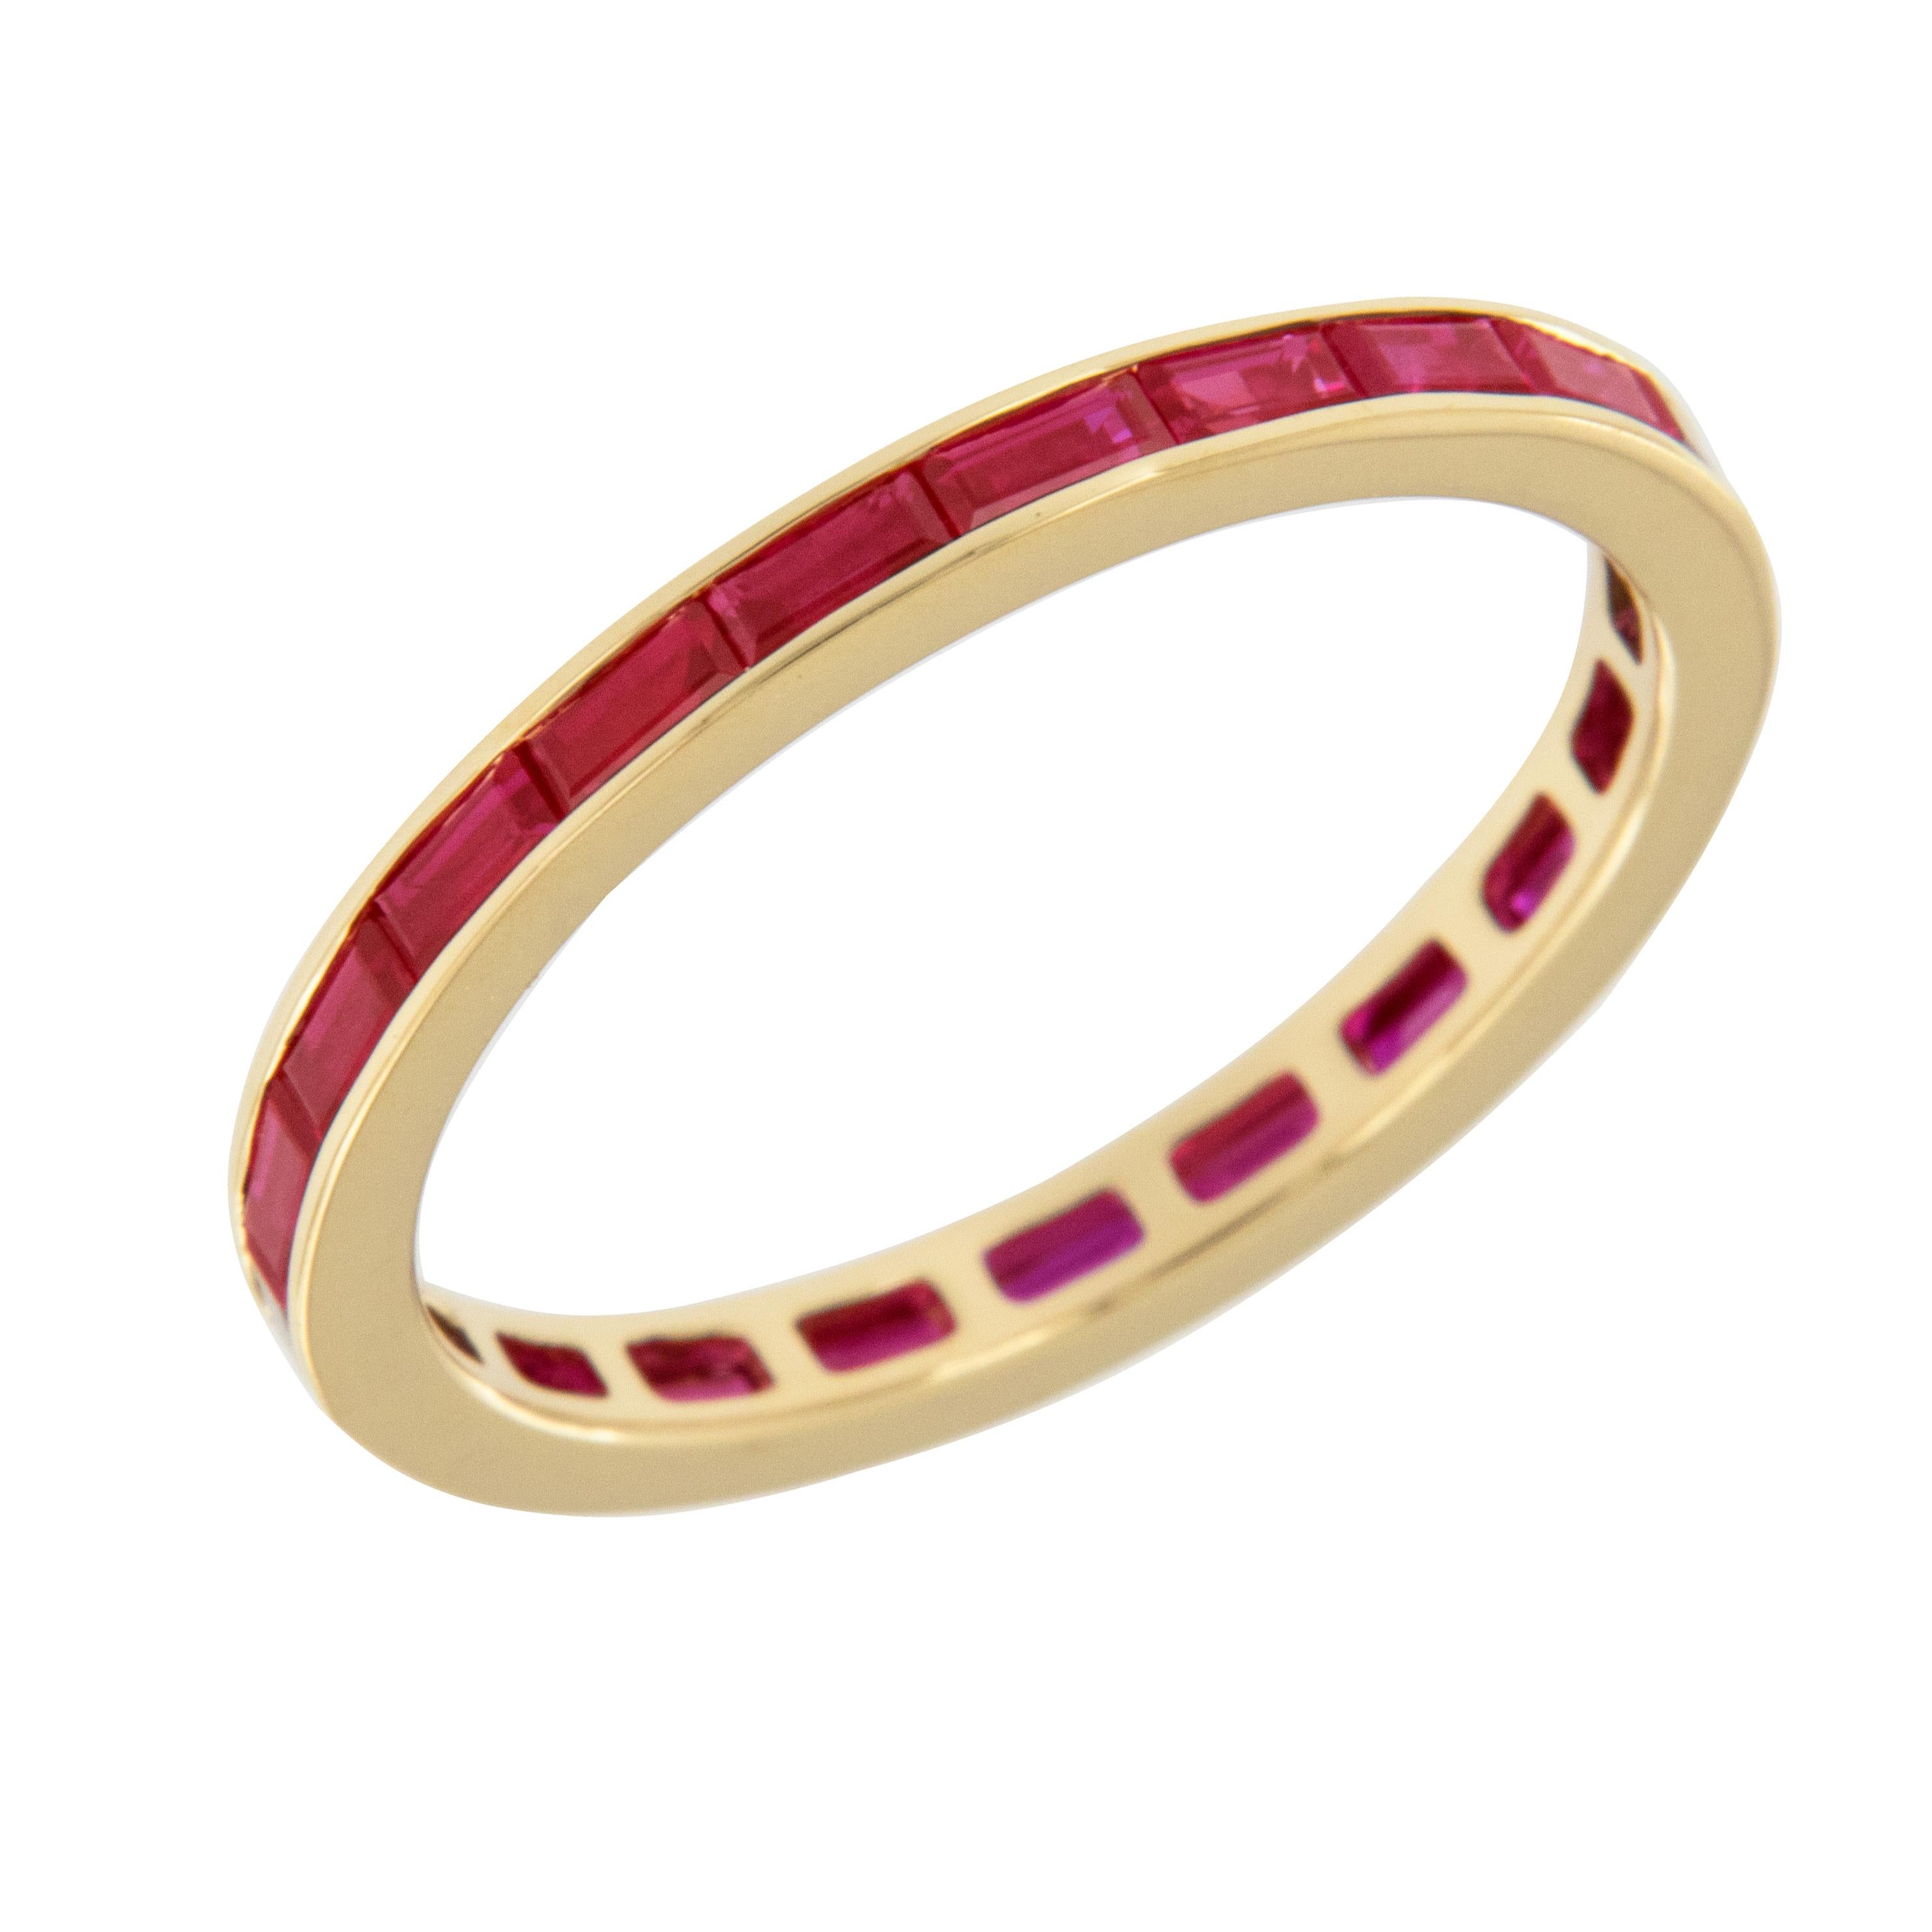 Dieses zeitlose Ewigkeitsband mit Rubin im Baguetteschliff wurde fachmännisch aus königlichem 18-karätigem Gelbgold gefertigt und ist eine perfekte Ergänzung zu einem bestehenden Verlobungsring, kann allein getragen werden und sieht auch gestapelt